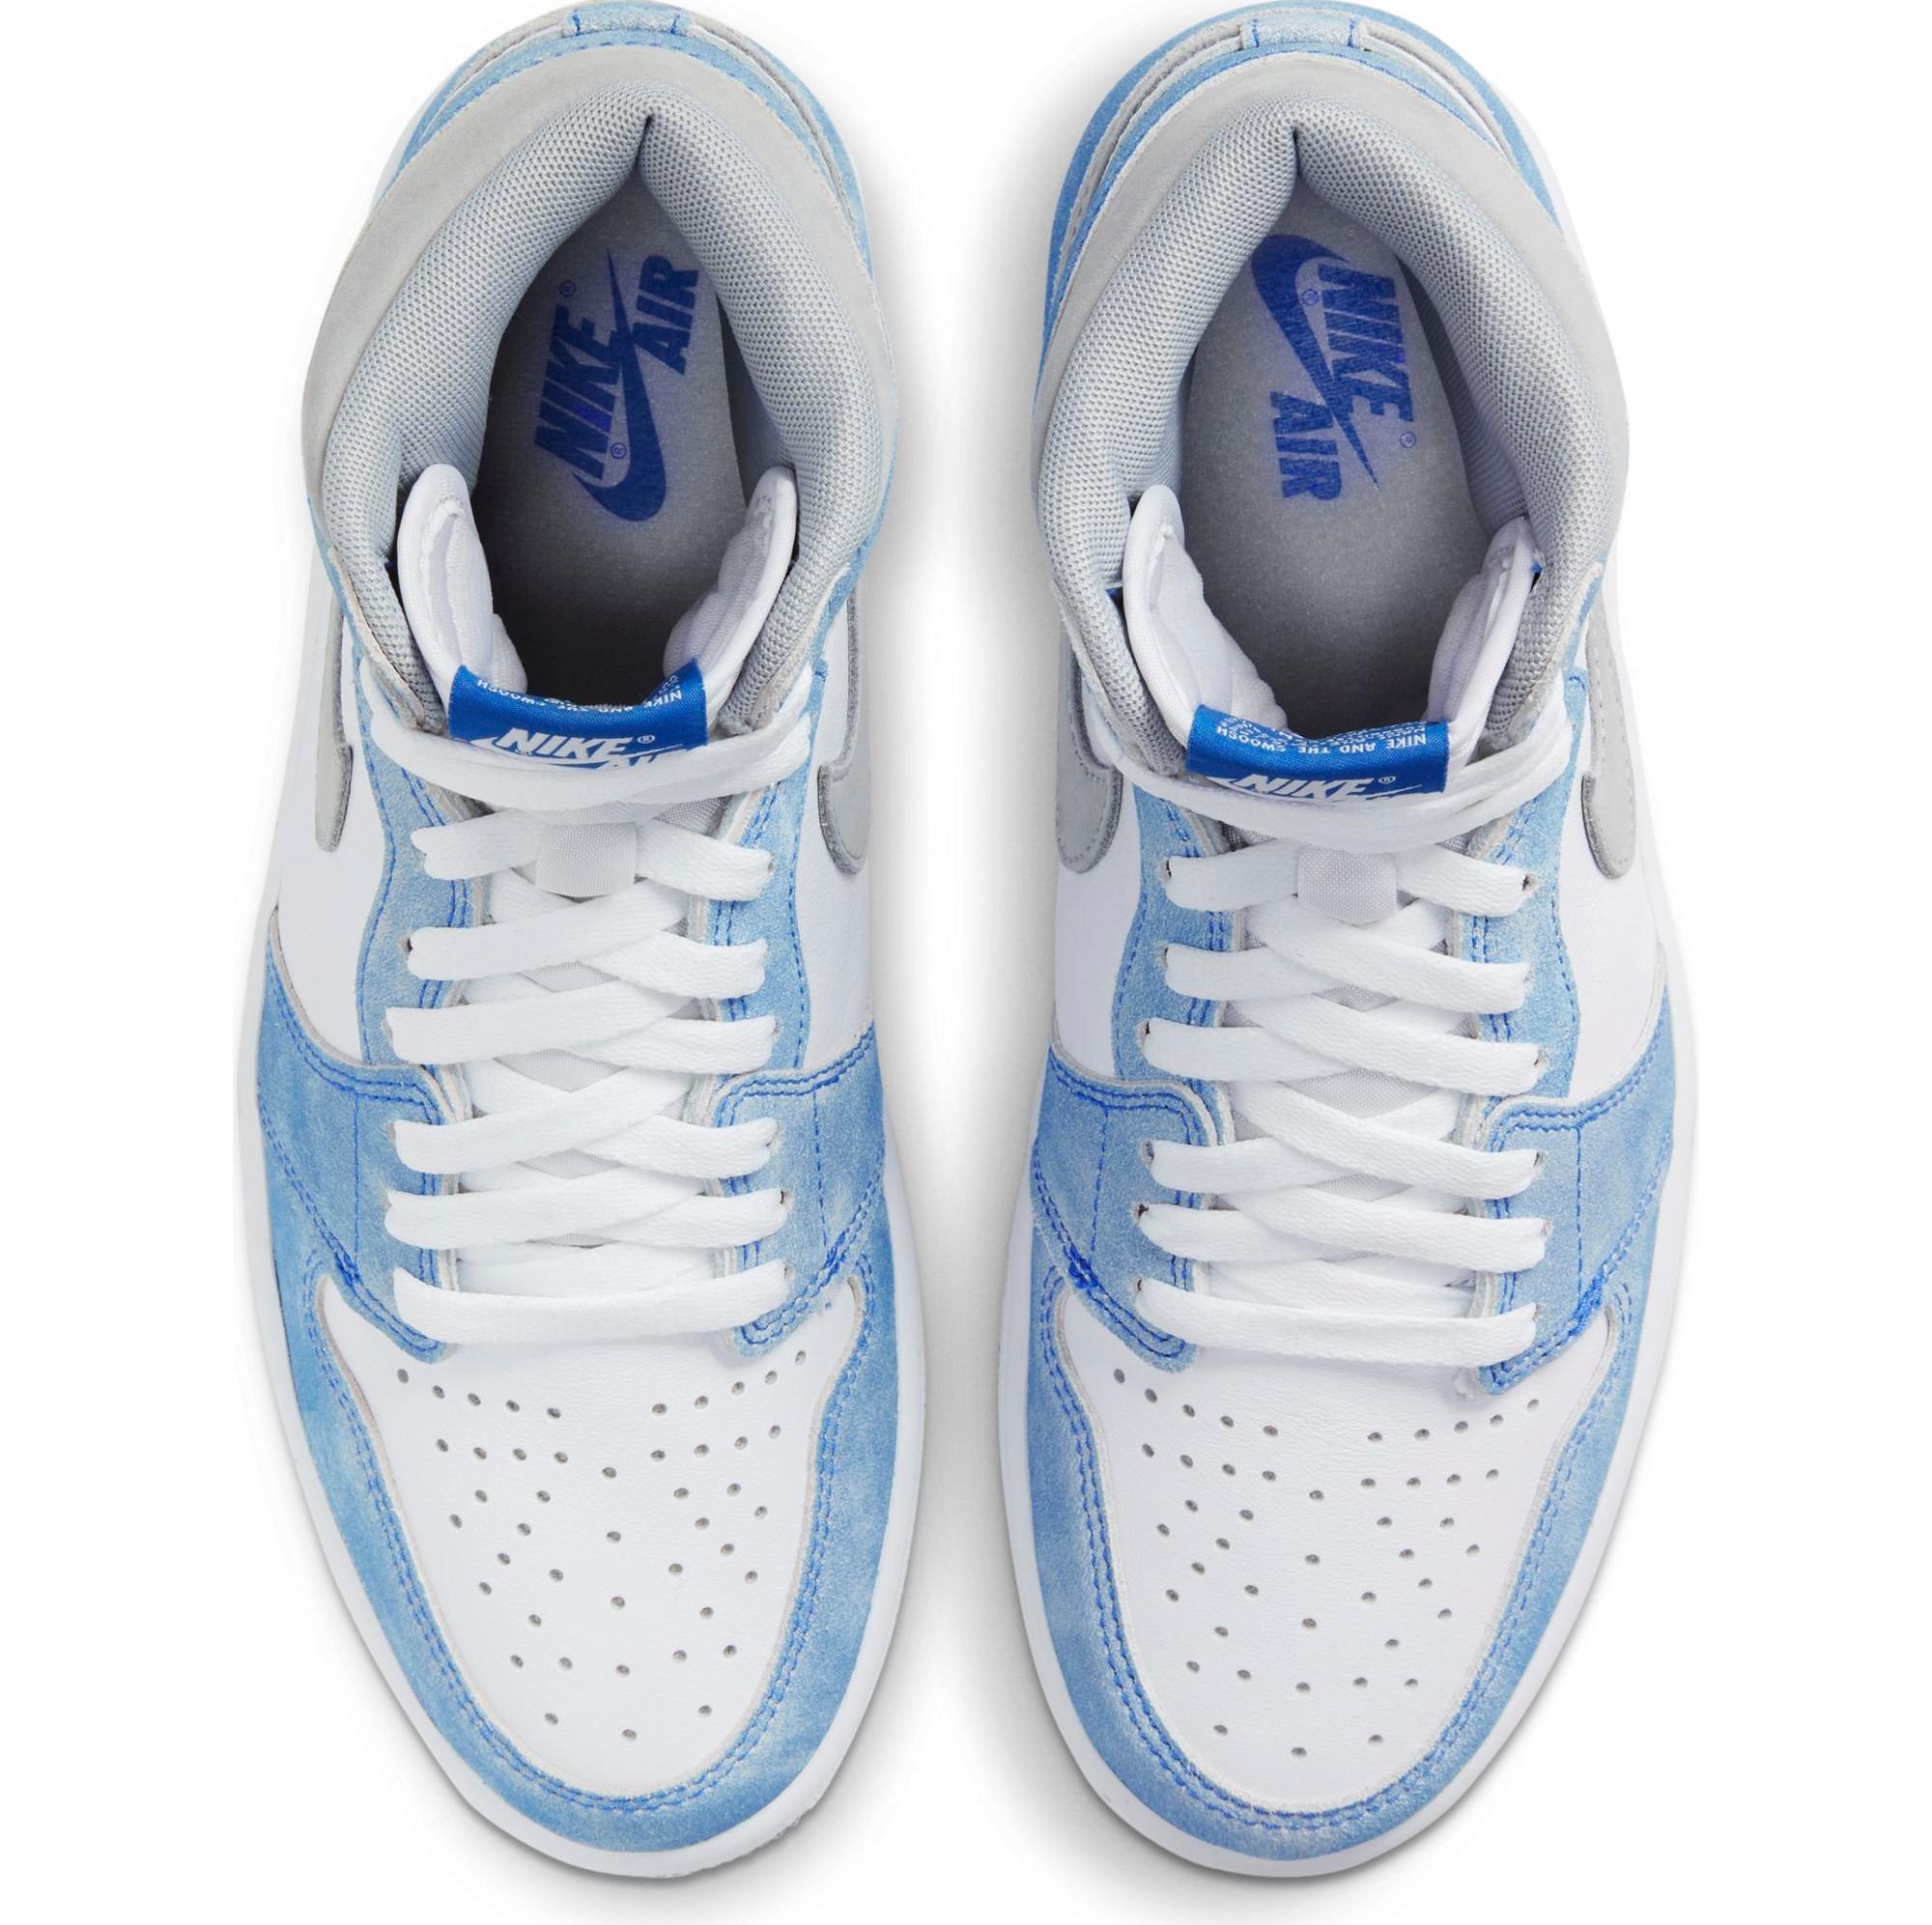 Sneakers Release – Jordan 1 Retro High OG “Hyper Royal 